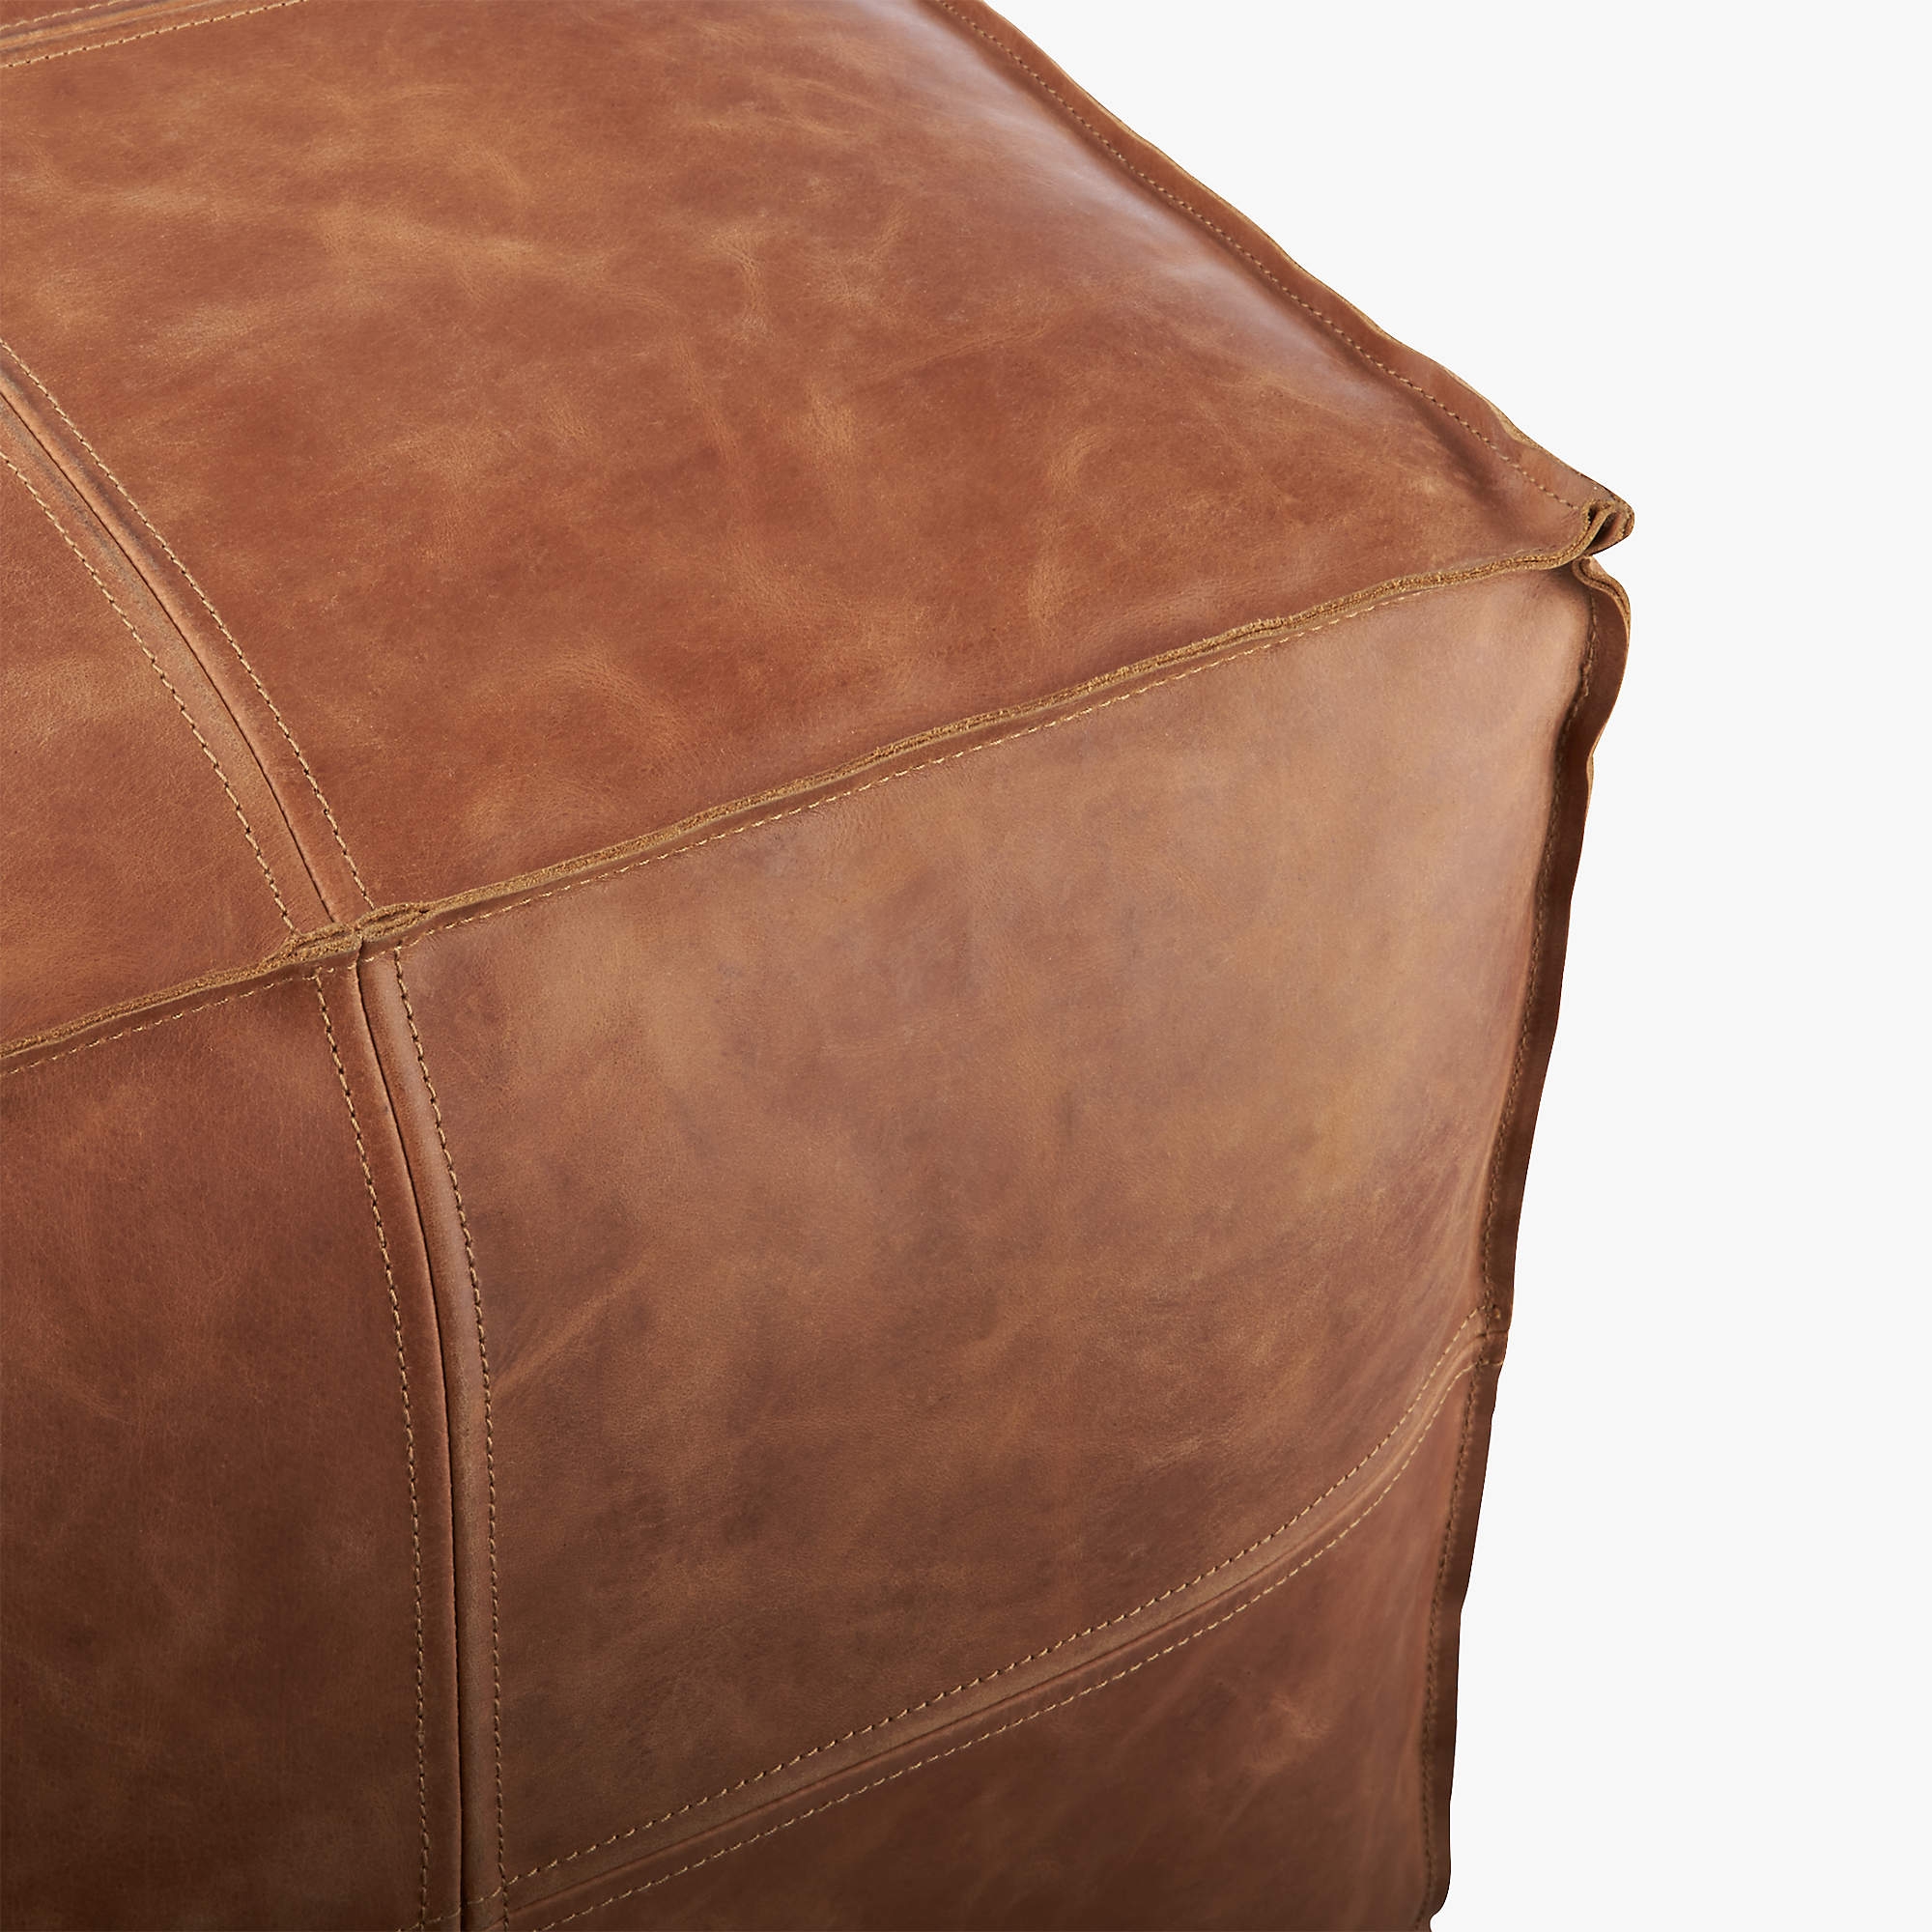 Leather Pouf, Saddle - Image 3